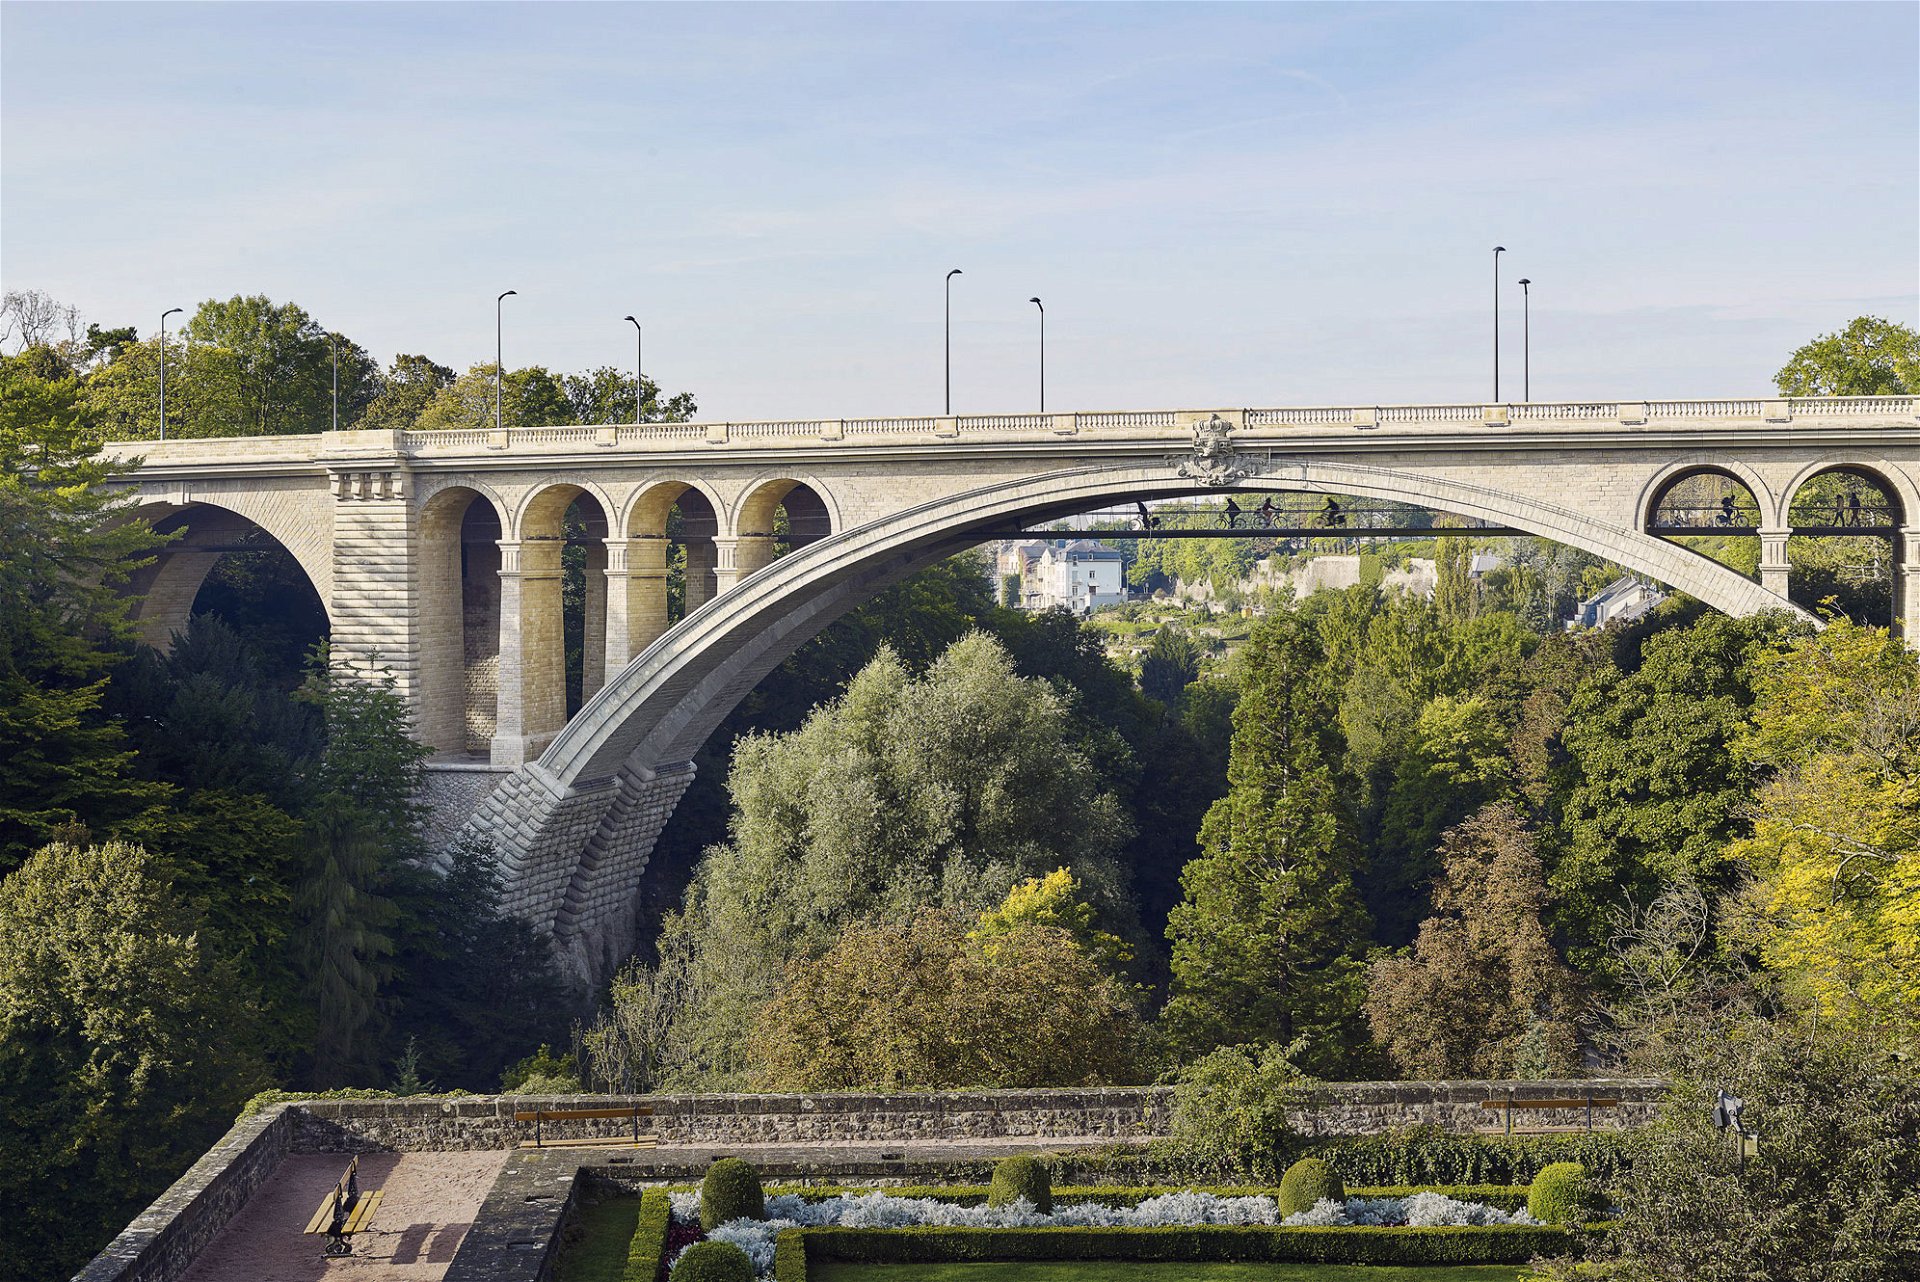 Passerelle du Pont Adolphe: CBA Architects, 2017, »Eine Brücke von erstaunlicher Einfachheit, vom ersten Tag an unersetzbar. Die leichte, filigrane Struktur hängt unter der eigentlichen Brü---cke und ist für Radfahrer gedacht, denen sie spektakuläre Blicke ins Tal ermöglicht.«